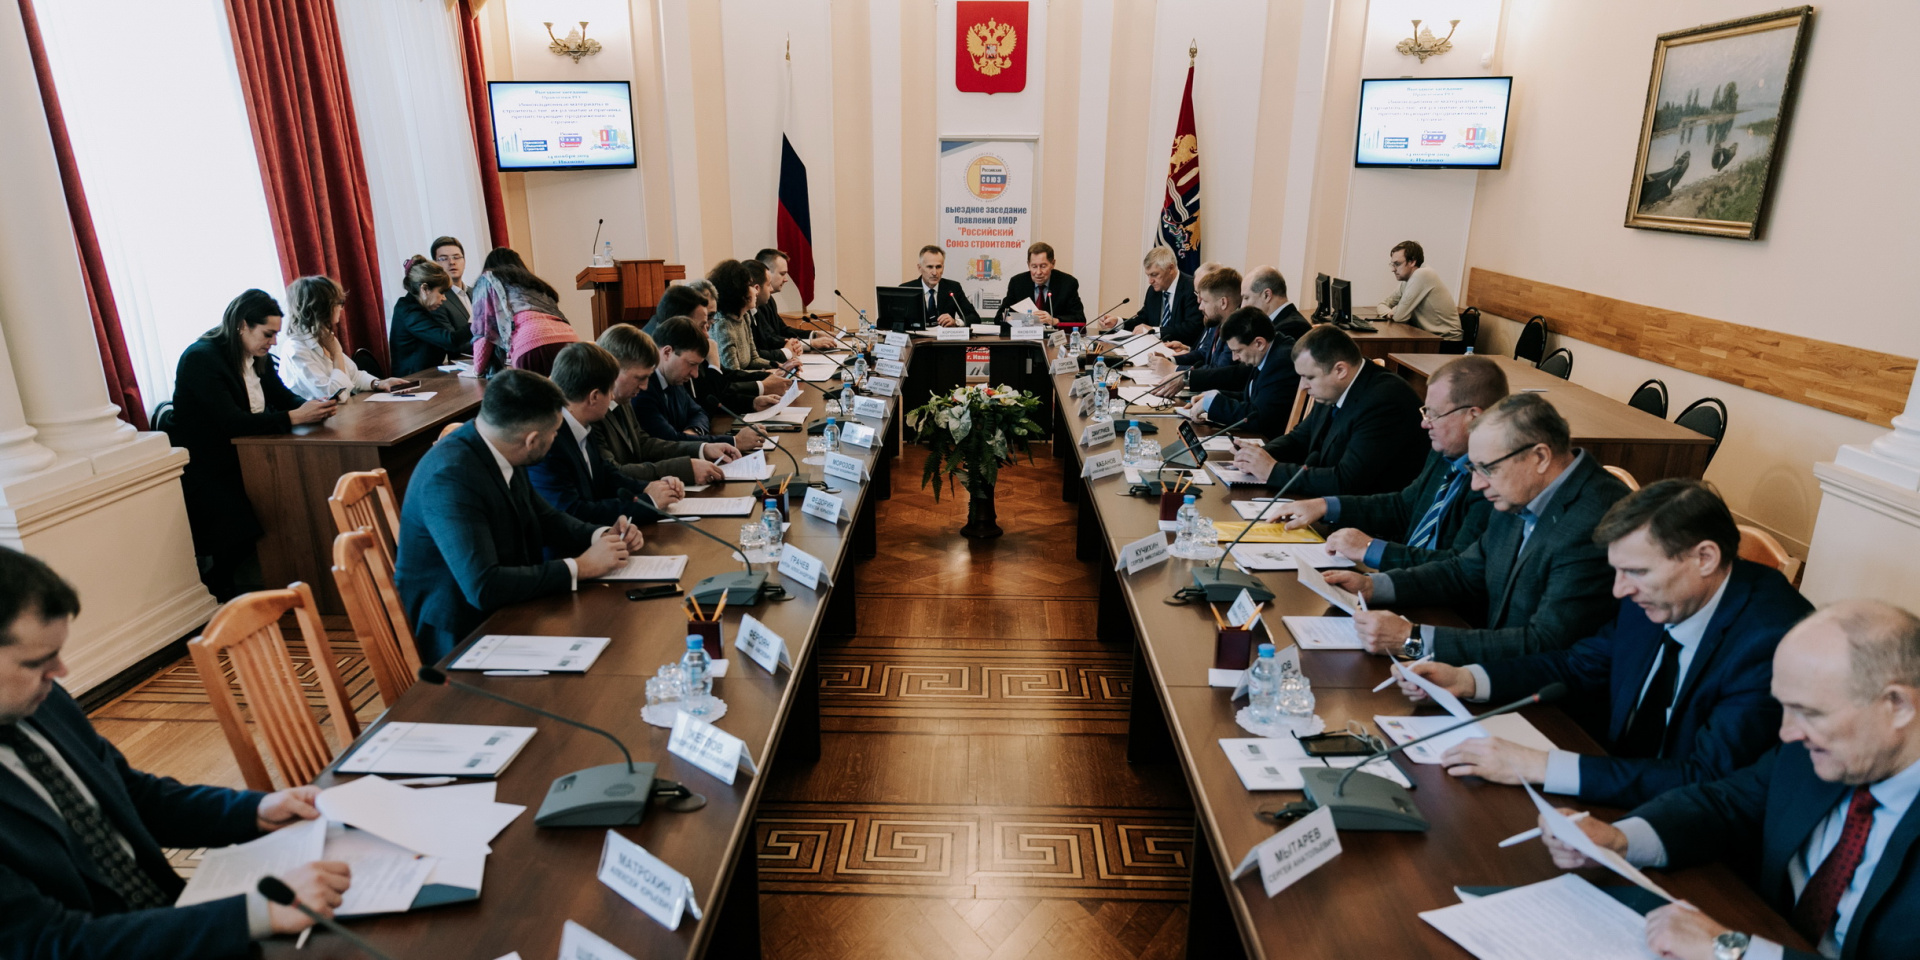 Заключено соглашение о сотрудничестве между Ивановской областью, Российским союзом строителей и ассоциацией производителей стройматериалов